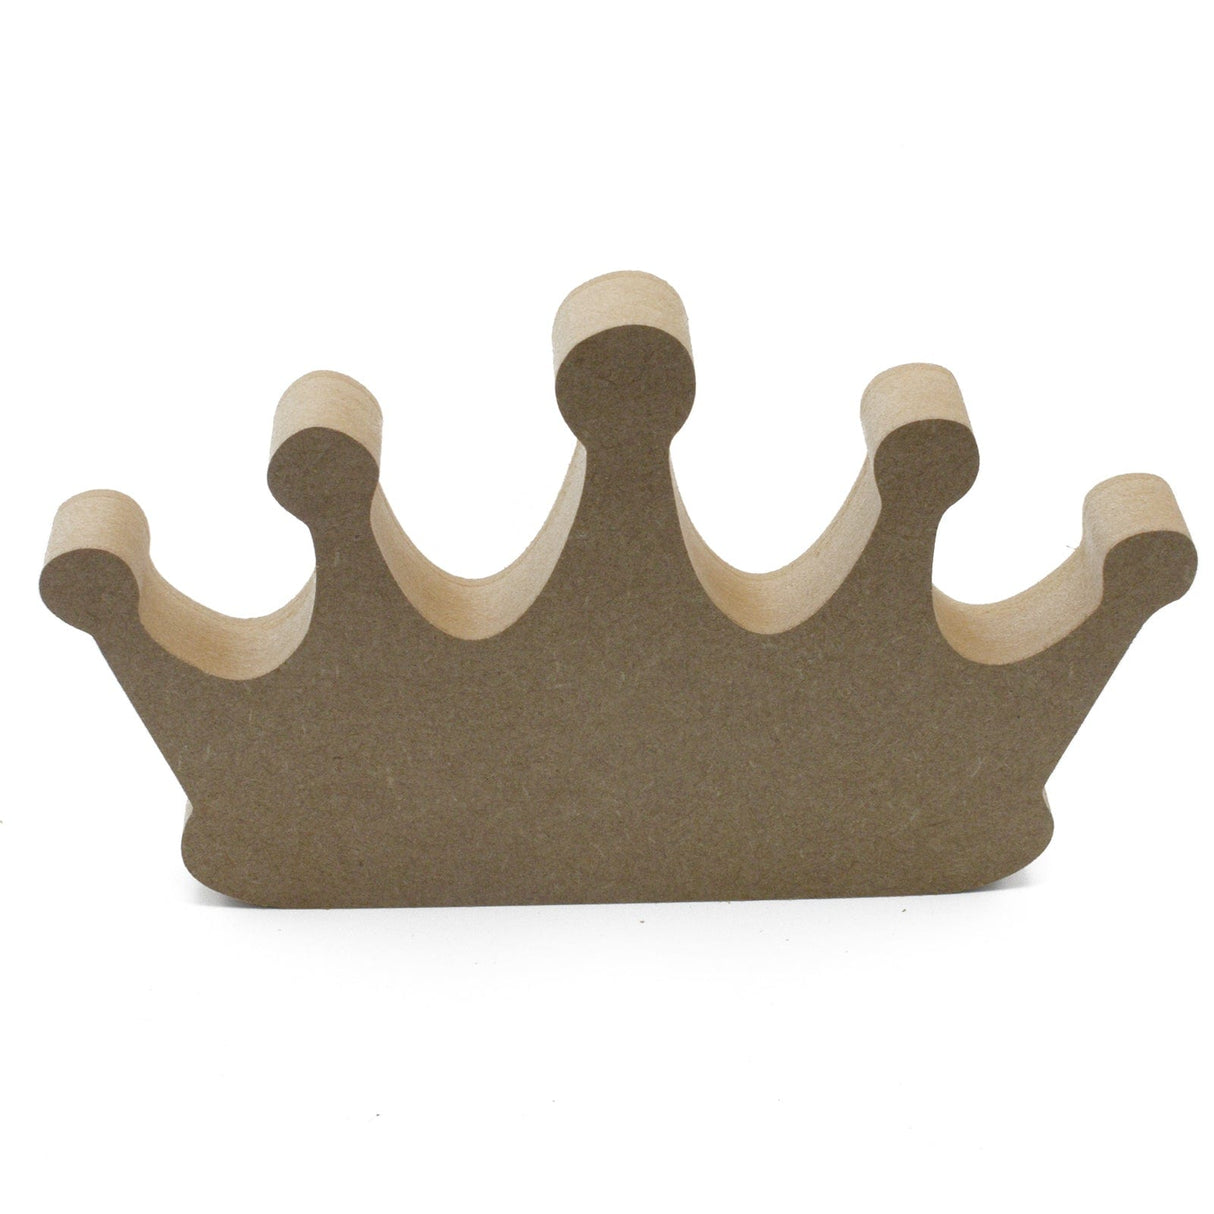 Freestanding Crown - Tiara Craft Shapes - Laserworksuk